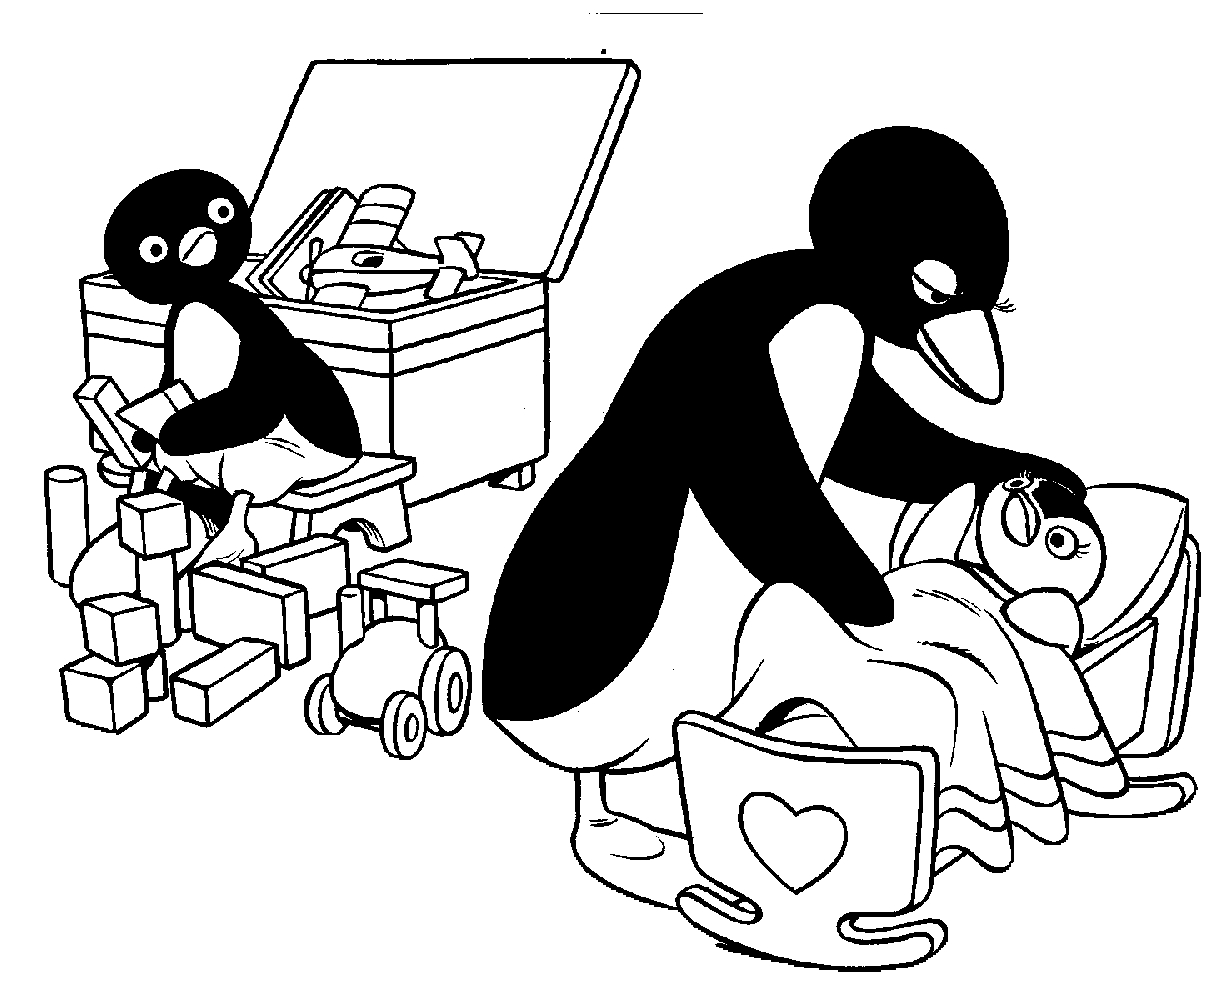 Disegno 2 di Pingu da stampare e colorare